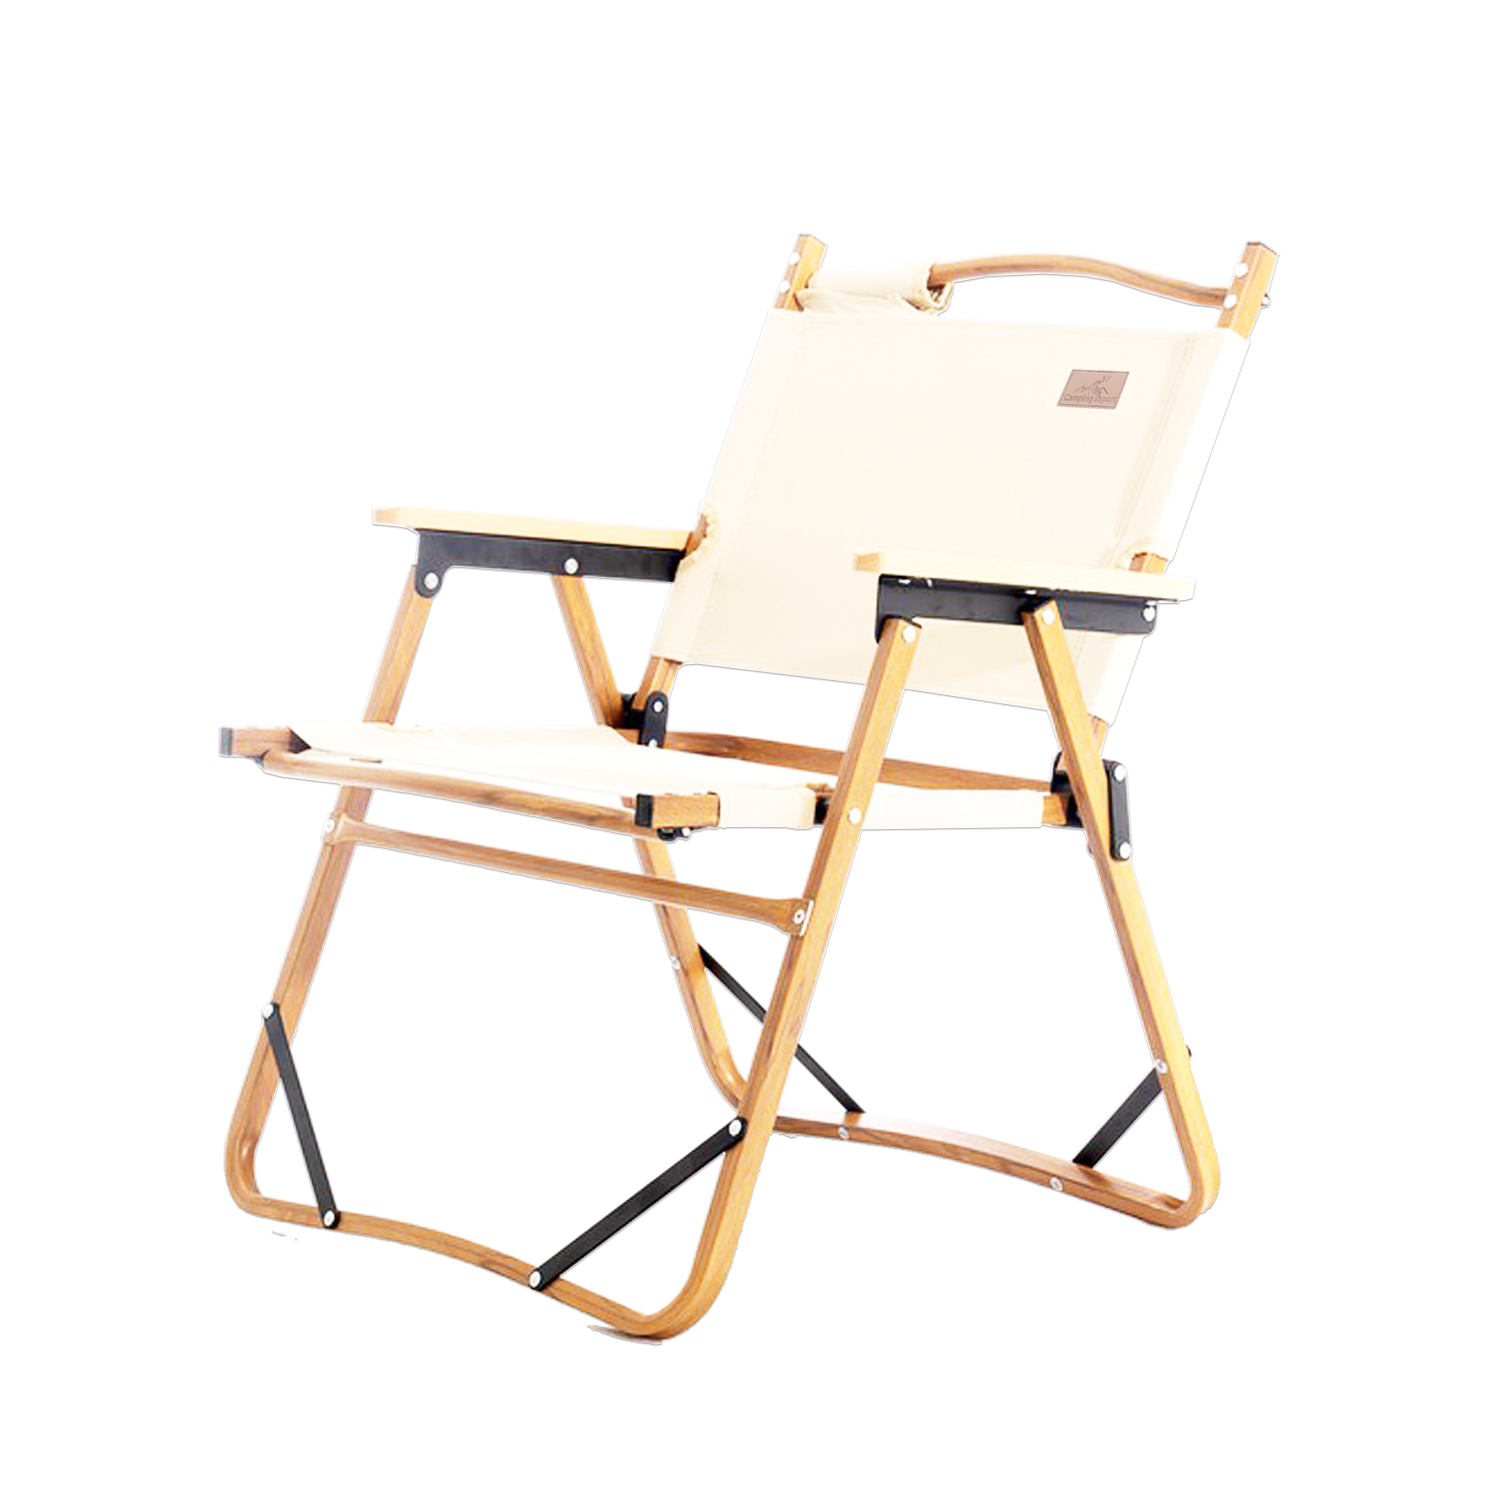 Camping Expert เก้าอี้สนาม  เก้าอี้แคมป์ปิ้ง เก้าอี้พับ โครงอลูมิเนียมลายไม้ พับได้ รับน้ำหนักได้ 100 kgs. พร้อมกระเป๋าจัดเก็บ รุ่น CP1-GY